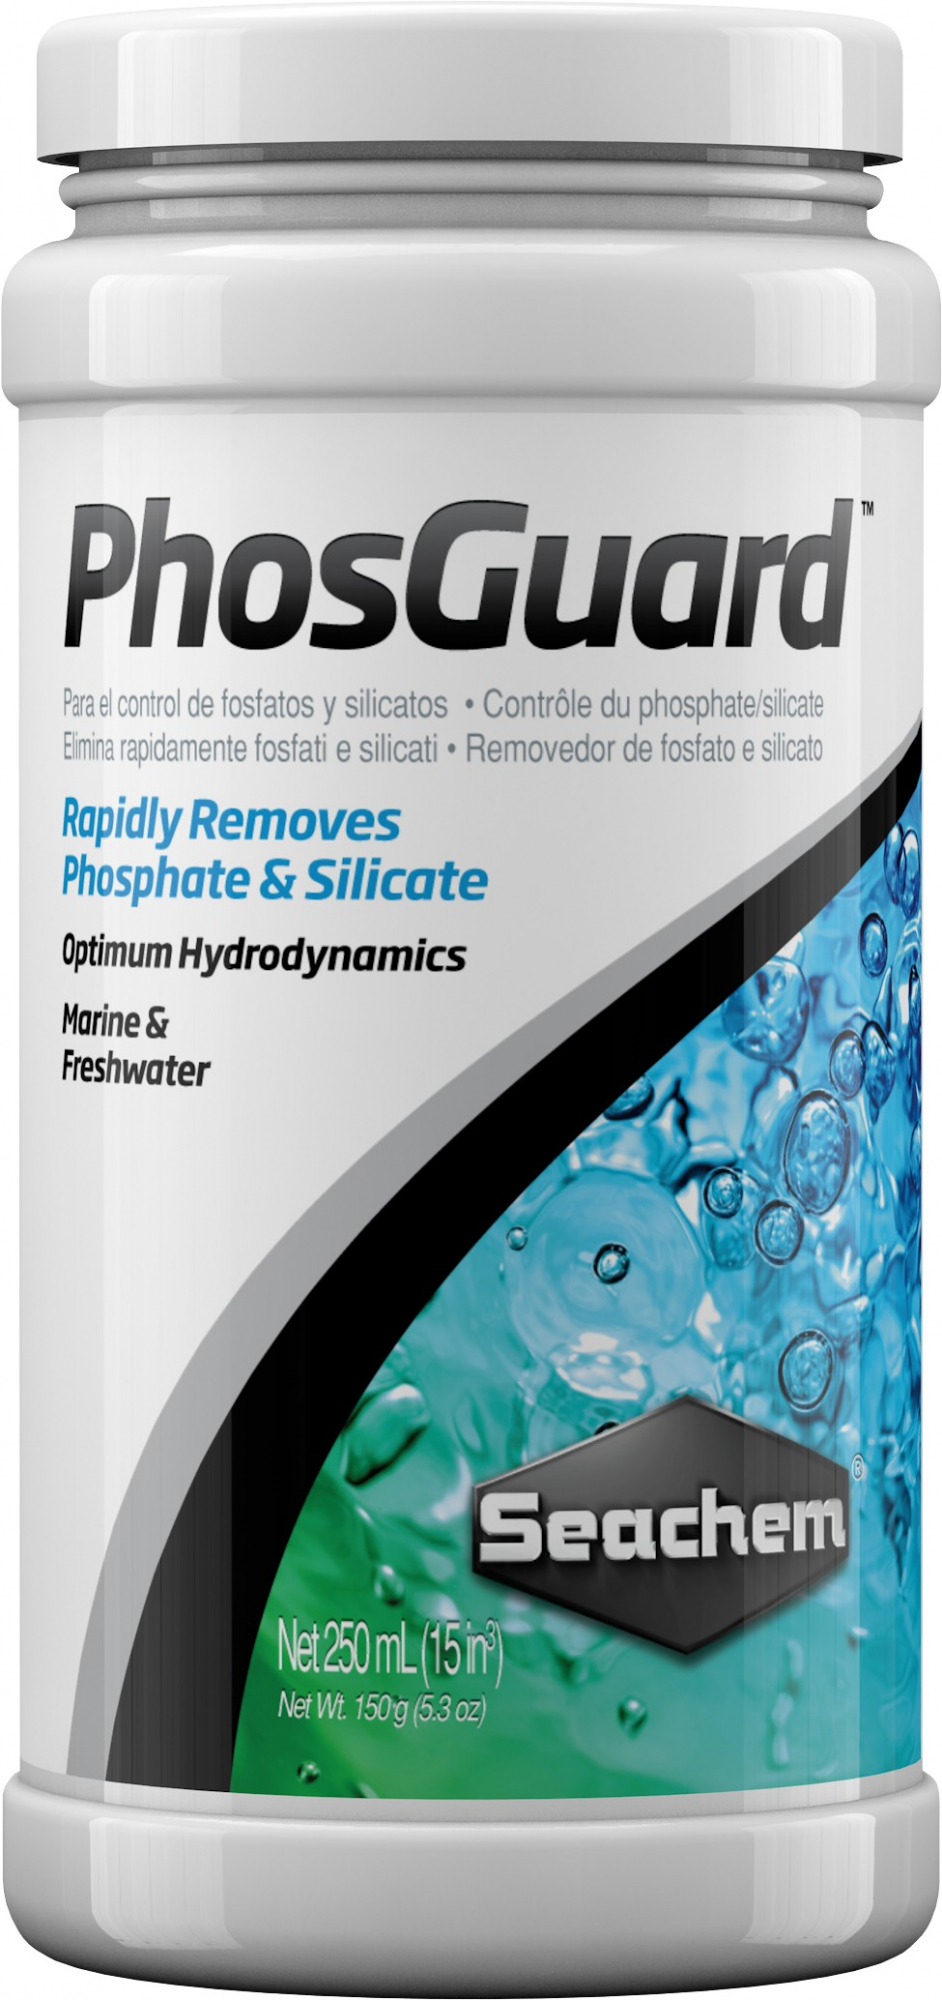 PhosGuard rimozione fosfato e silicato